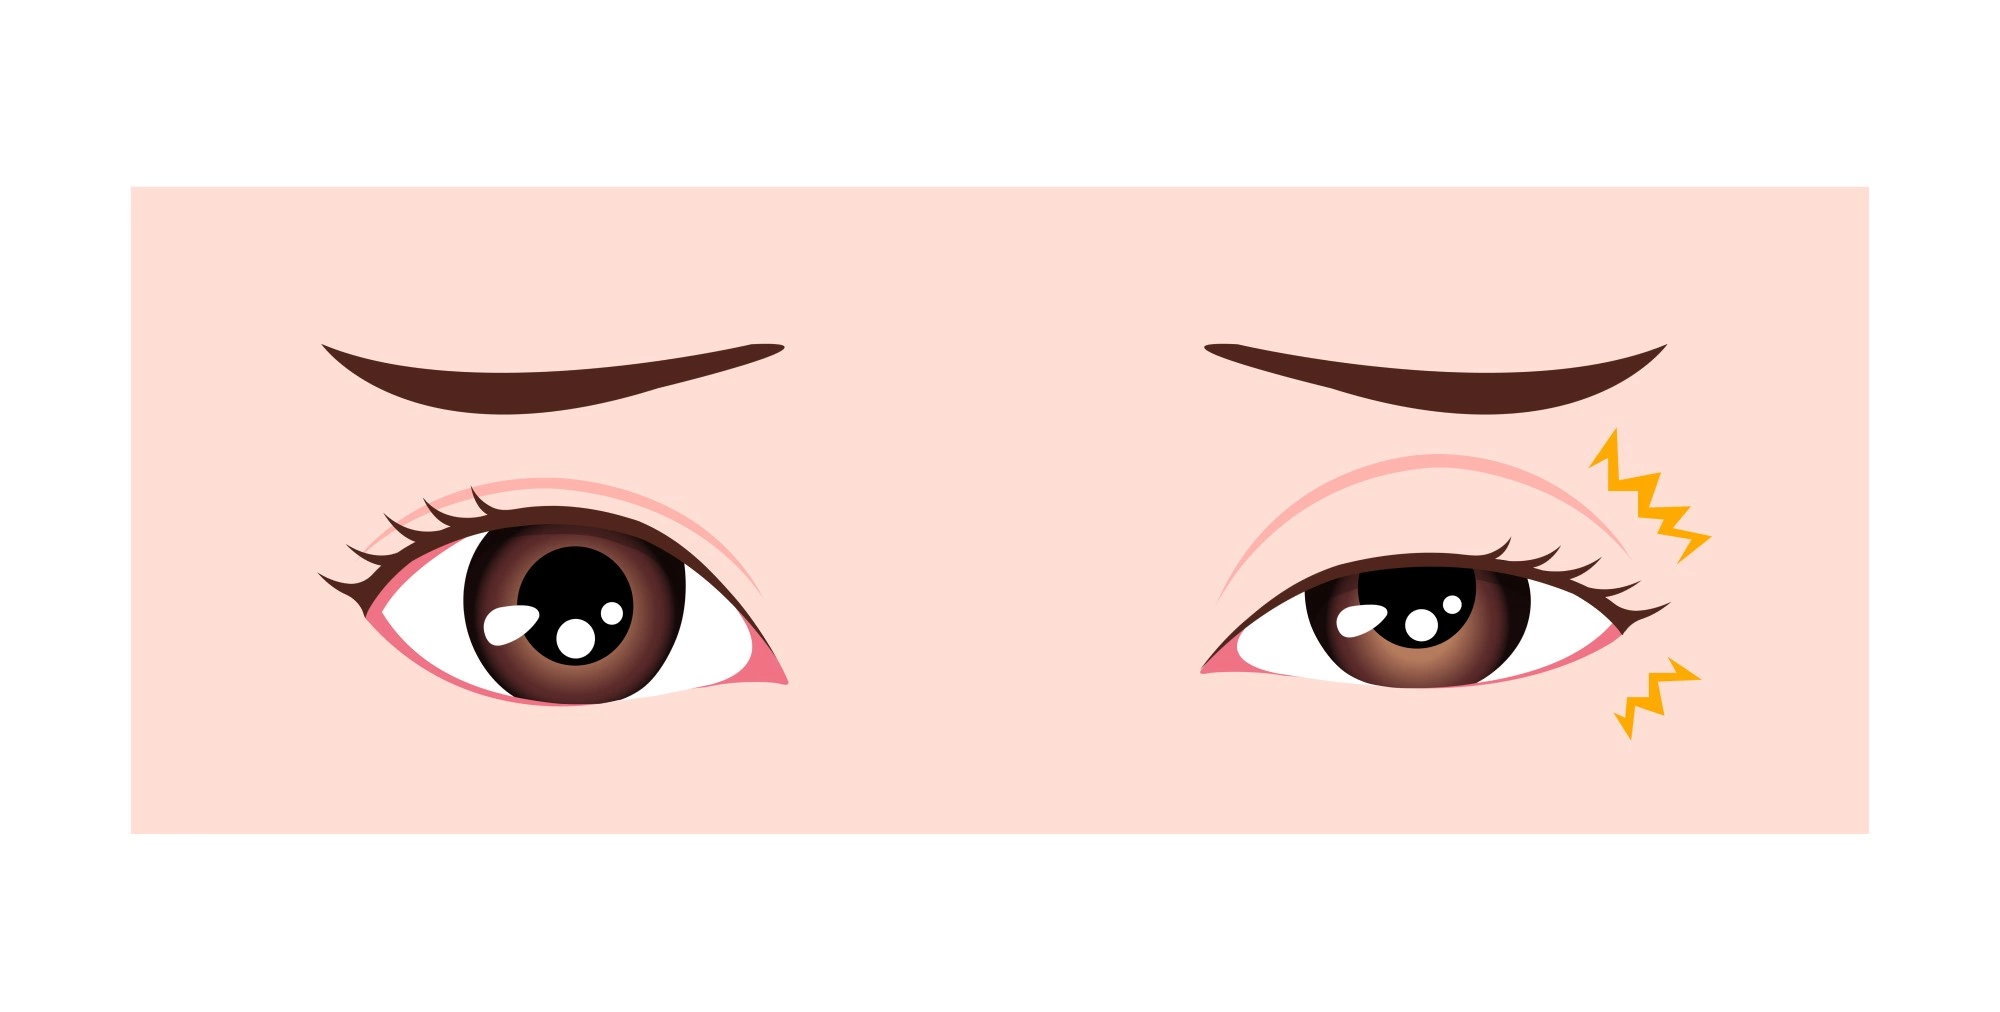 Подергивание глаз: 8 причин, способы лечения, профилактика